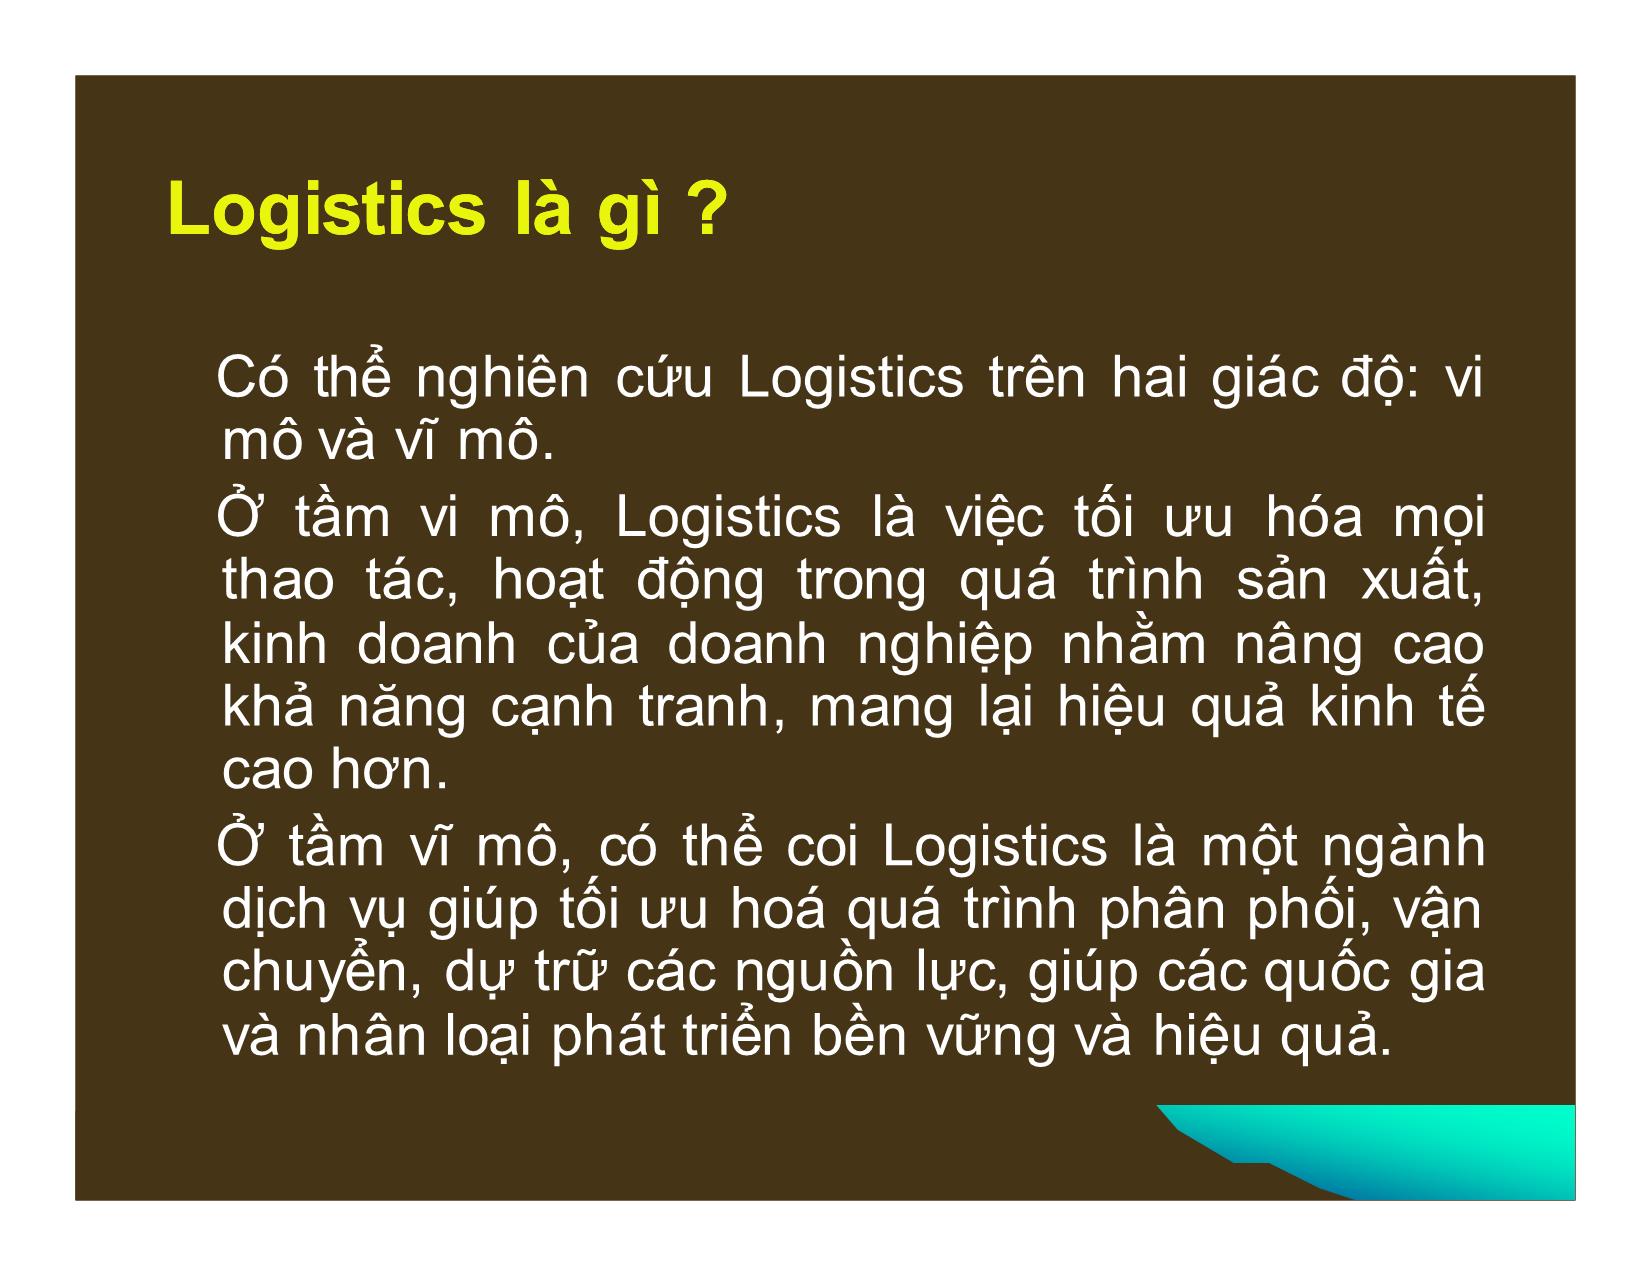 Phát triển dịch vụ logistics ở Việt Nam trong điều kiện hội nhập kinh tế quốc tế trang 5